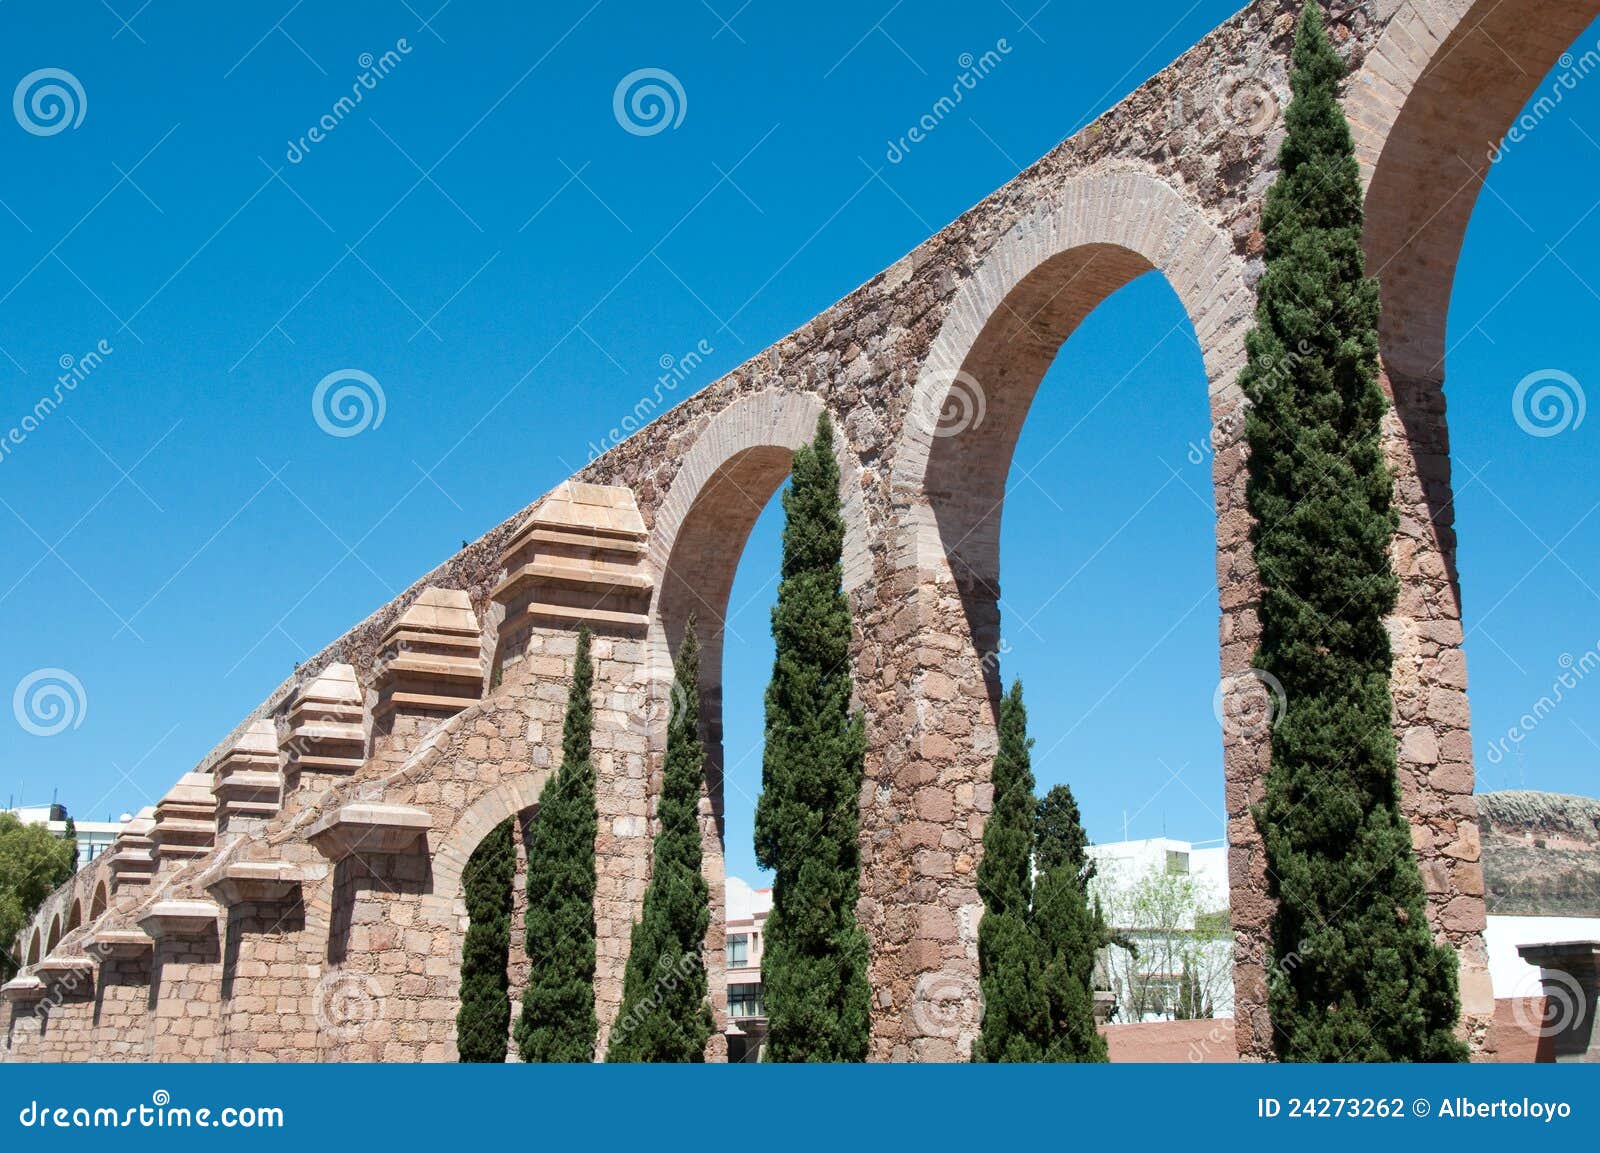 zacatecas aqueduct, mexico